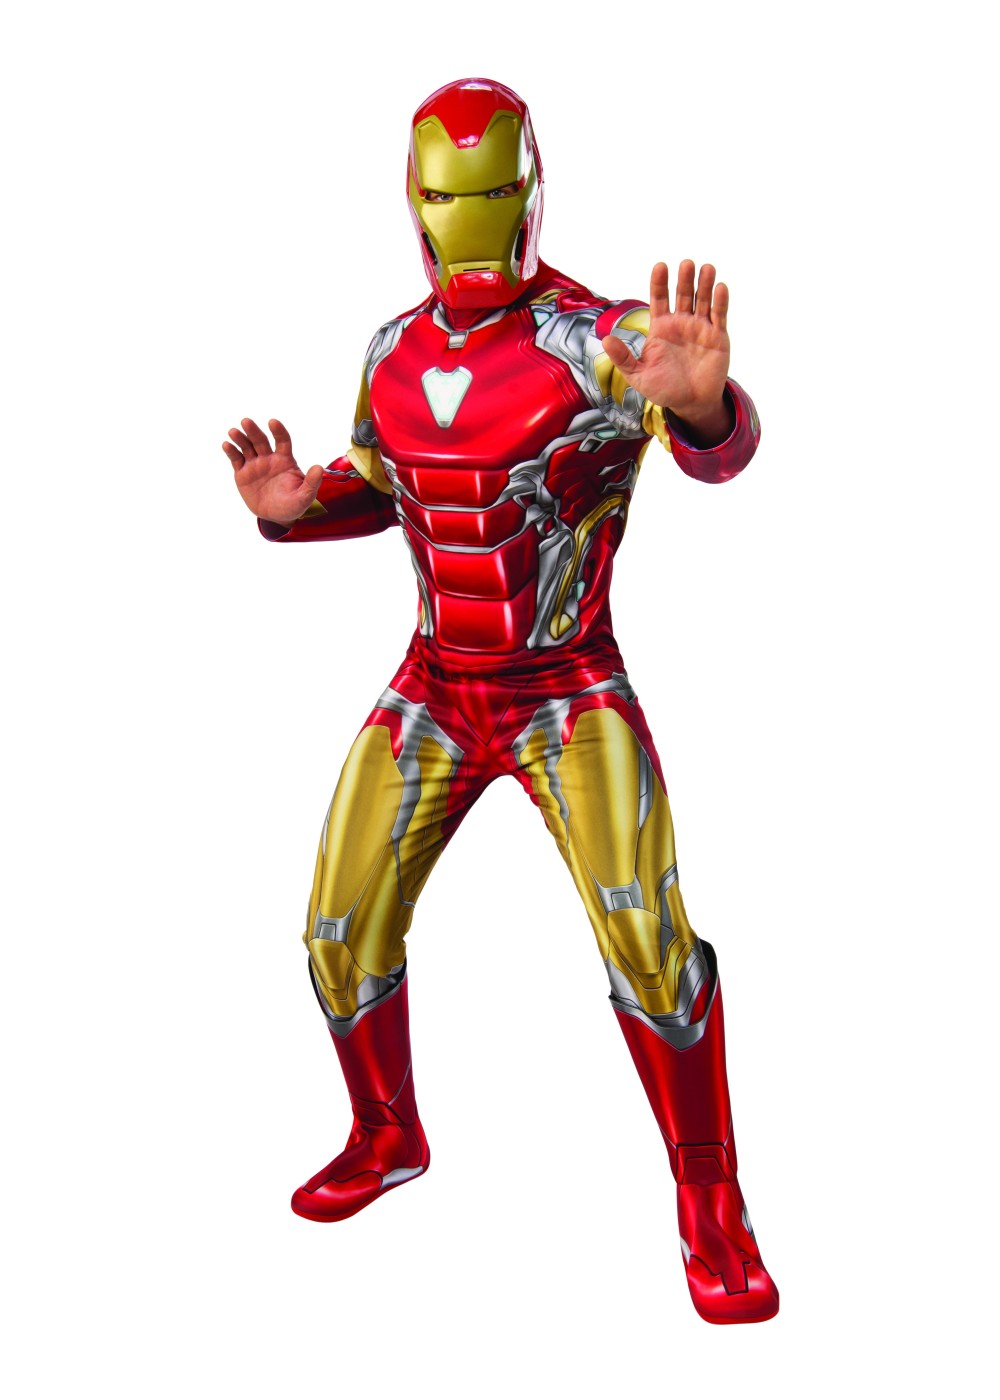 Endgame Iron Man Costume